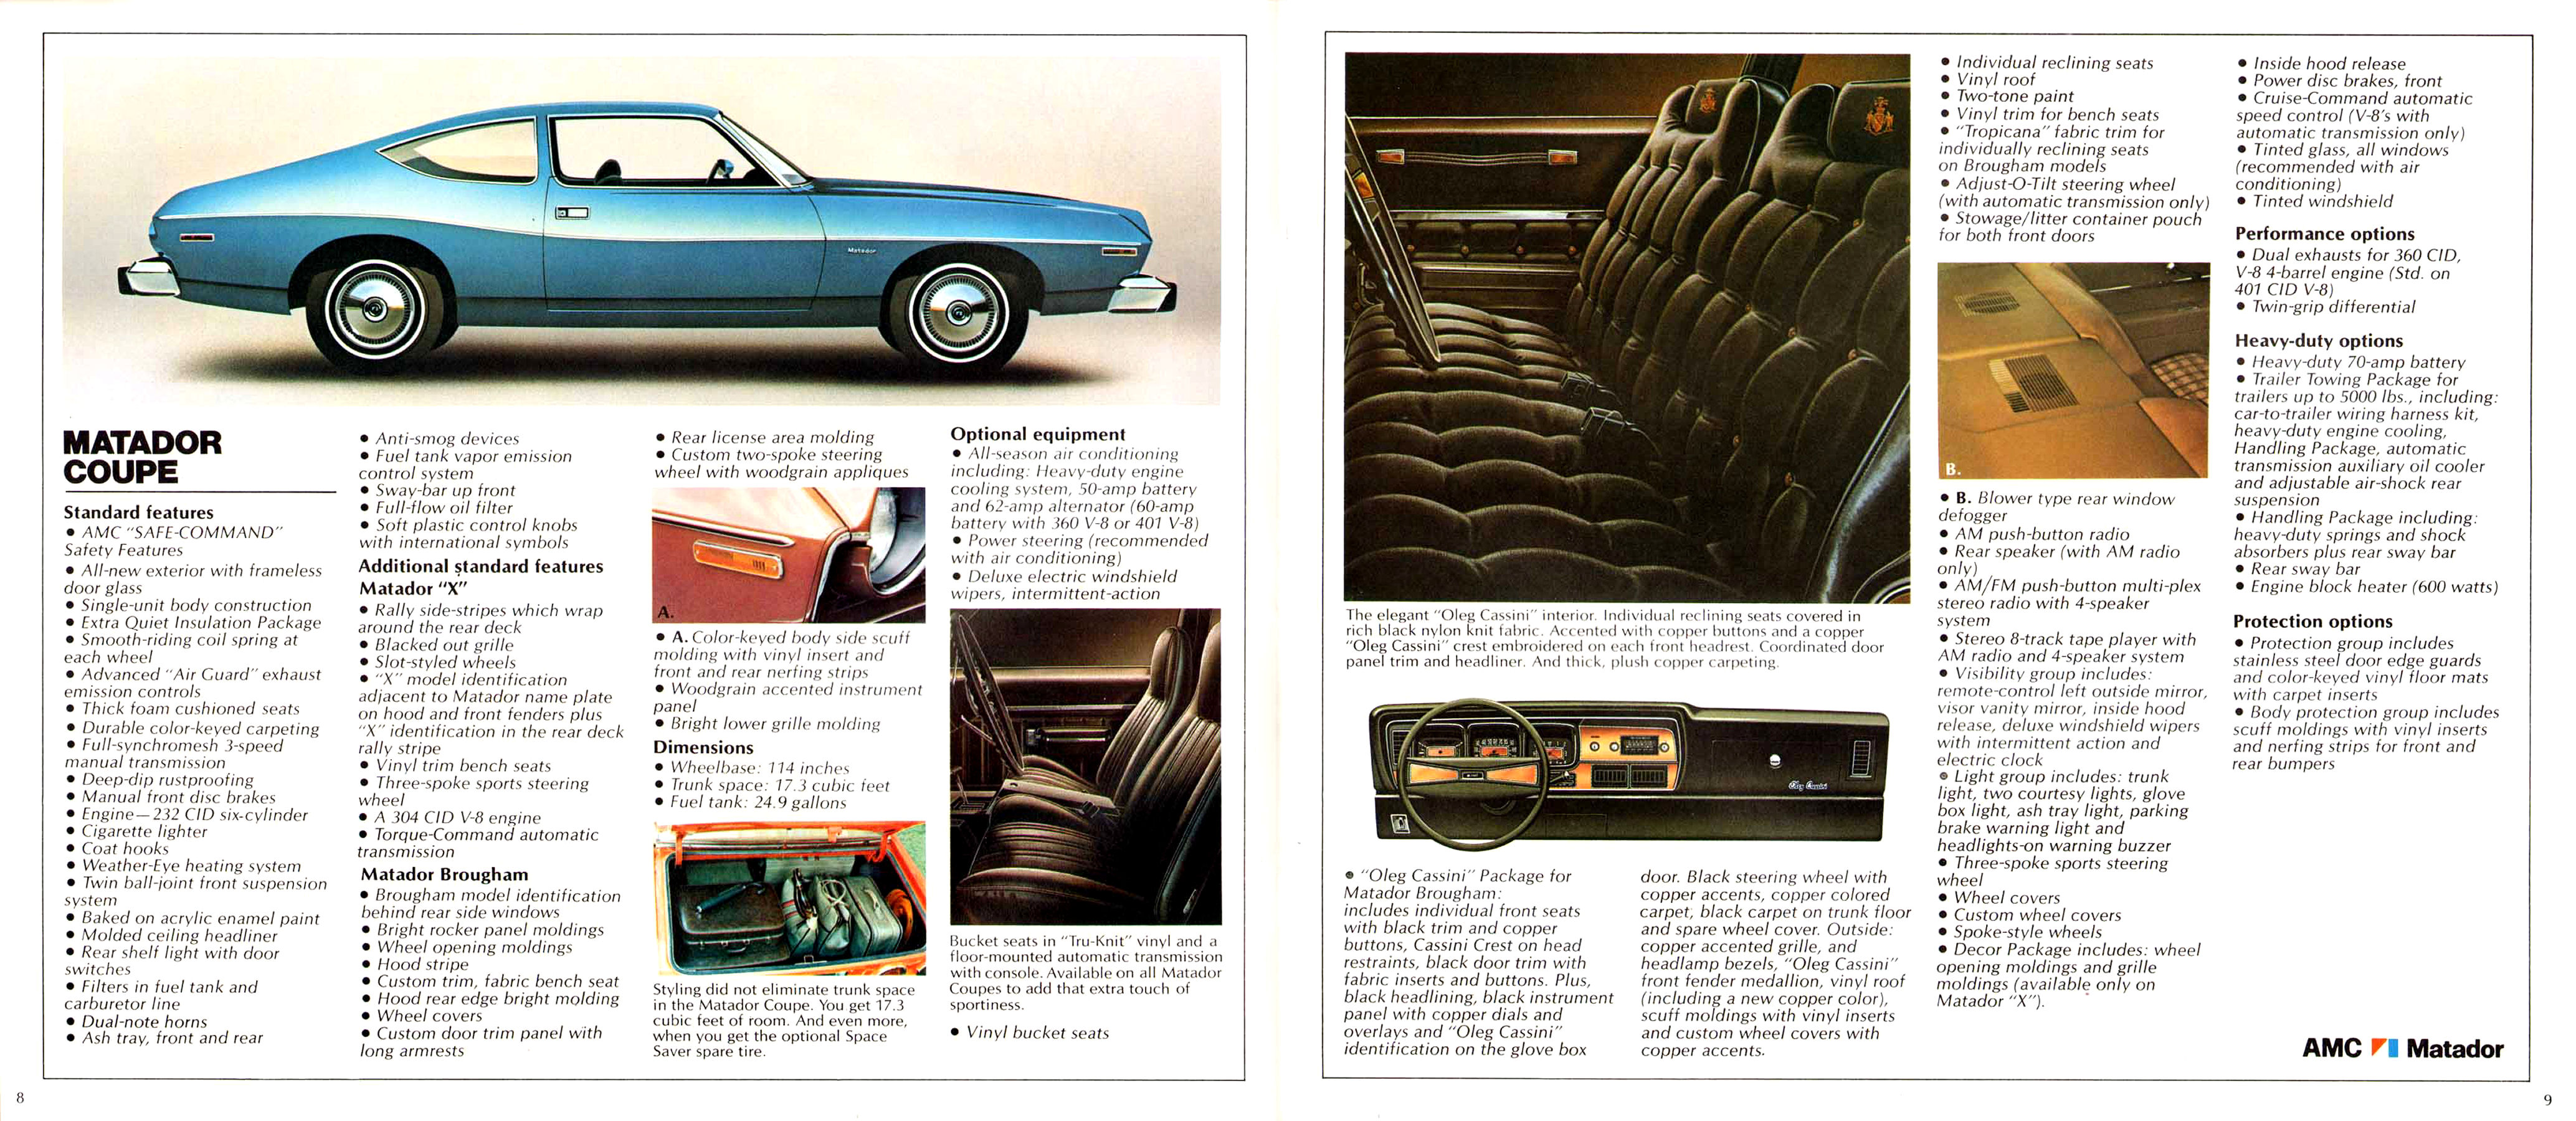 1974 AMC Full Line Prestige-08-09